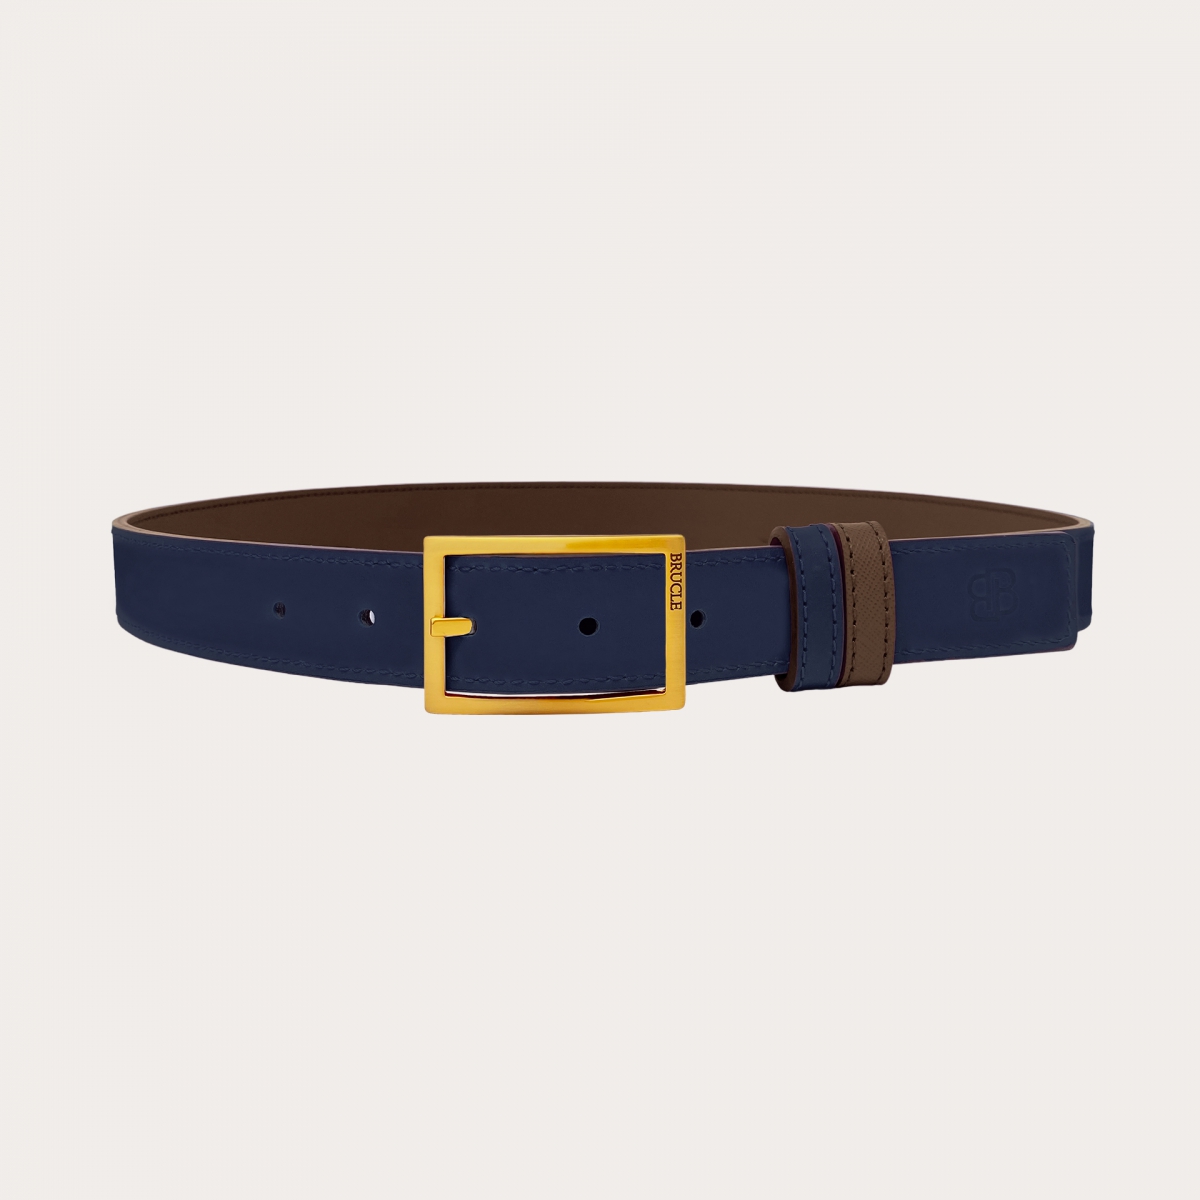 Cinturón reversible en Saffiano marron oscuro y piel azul